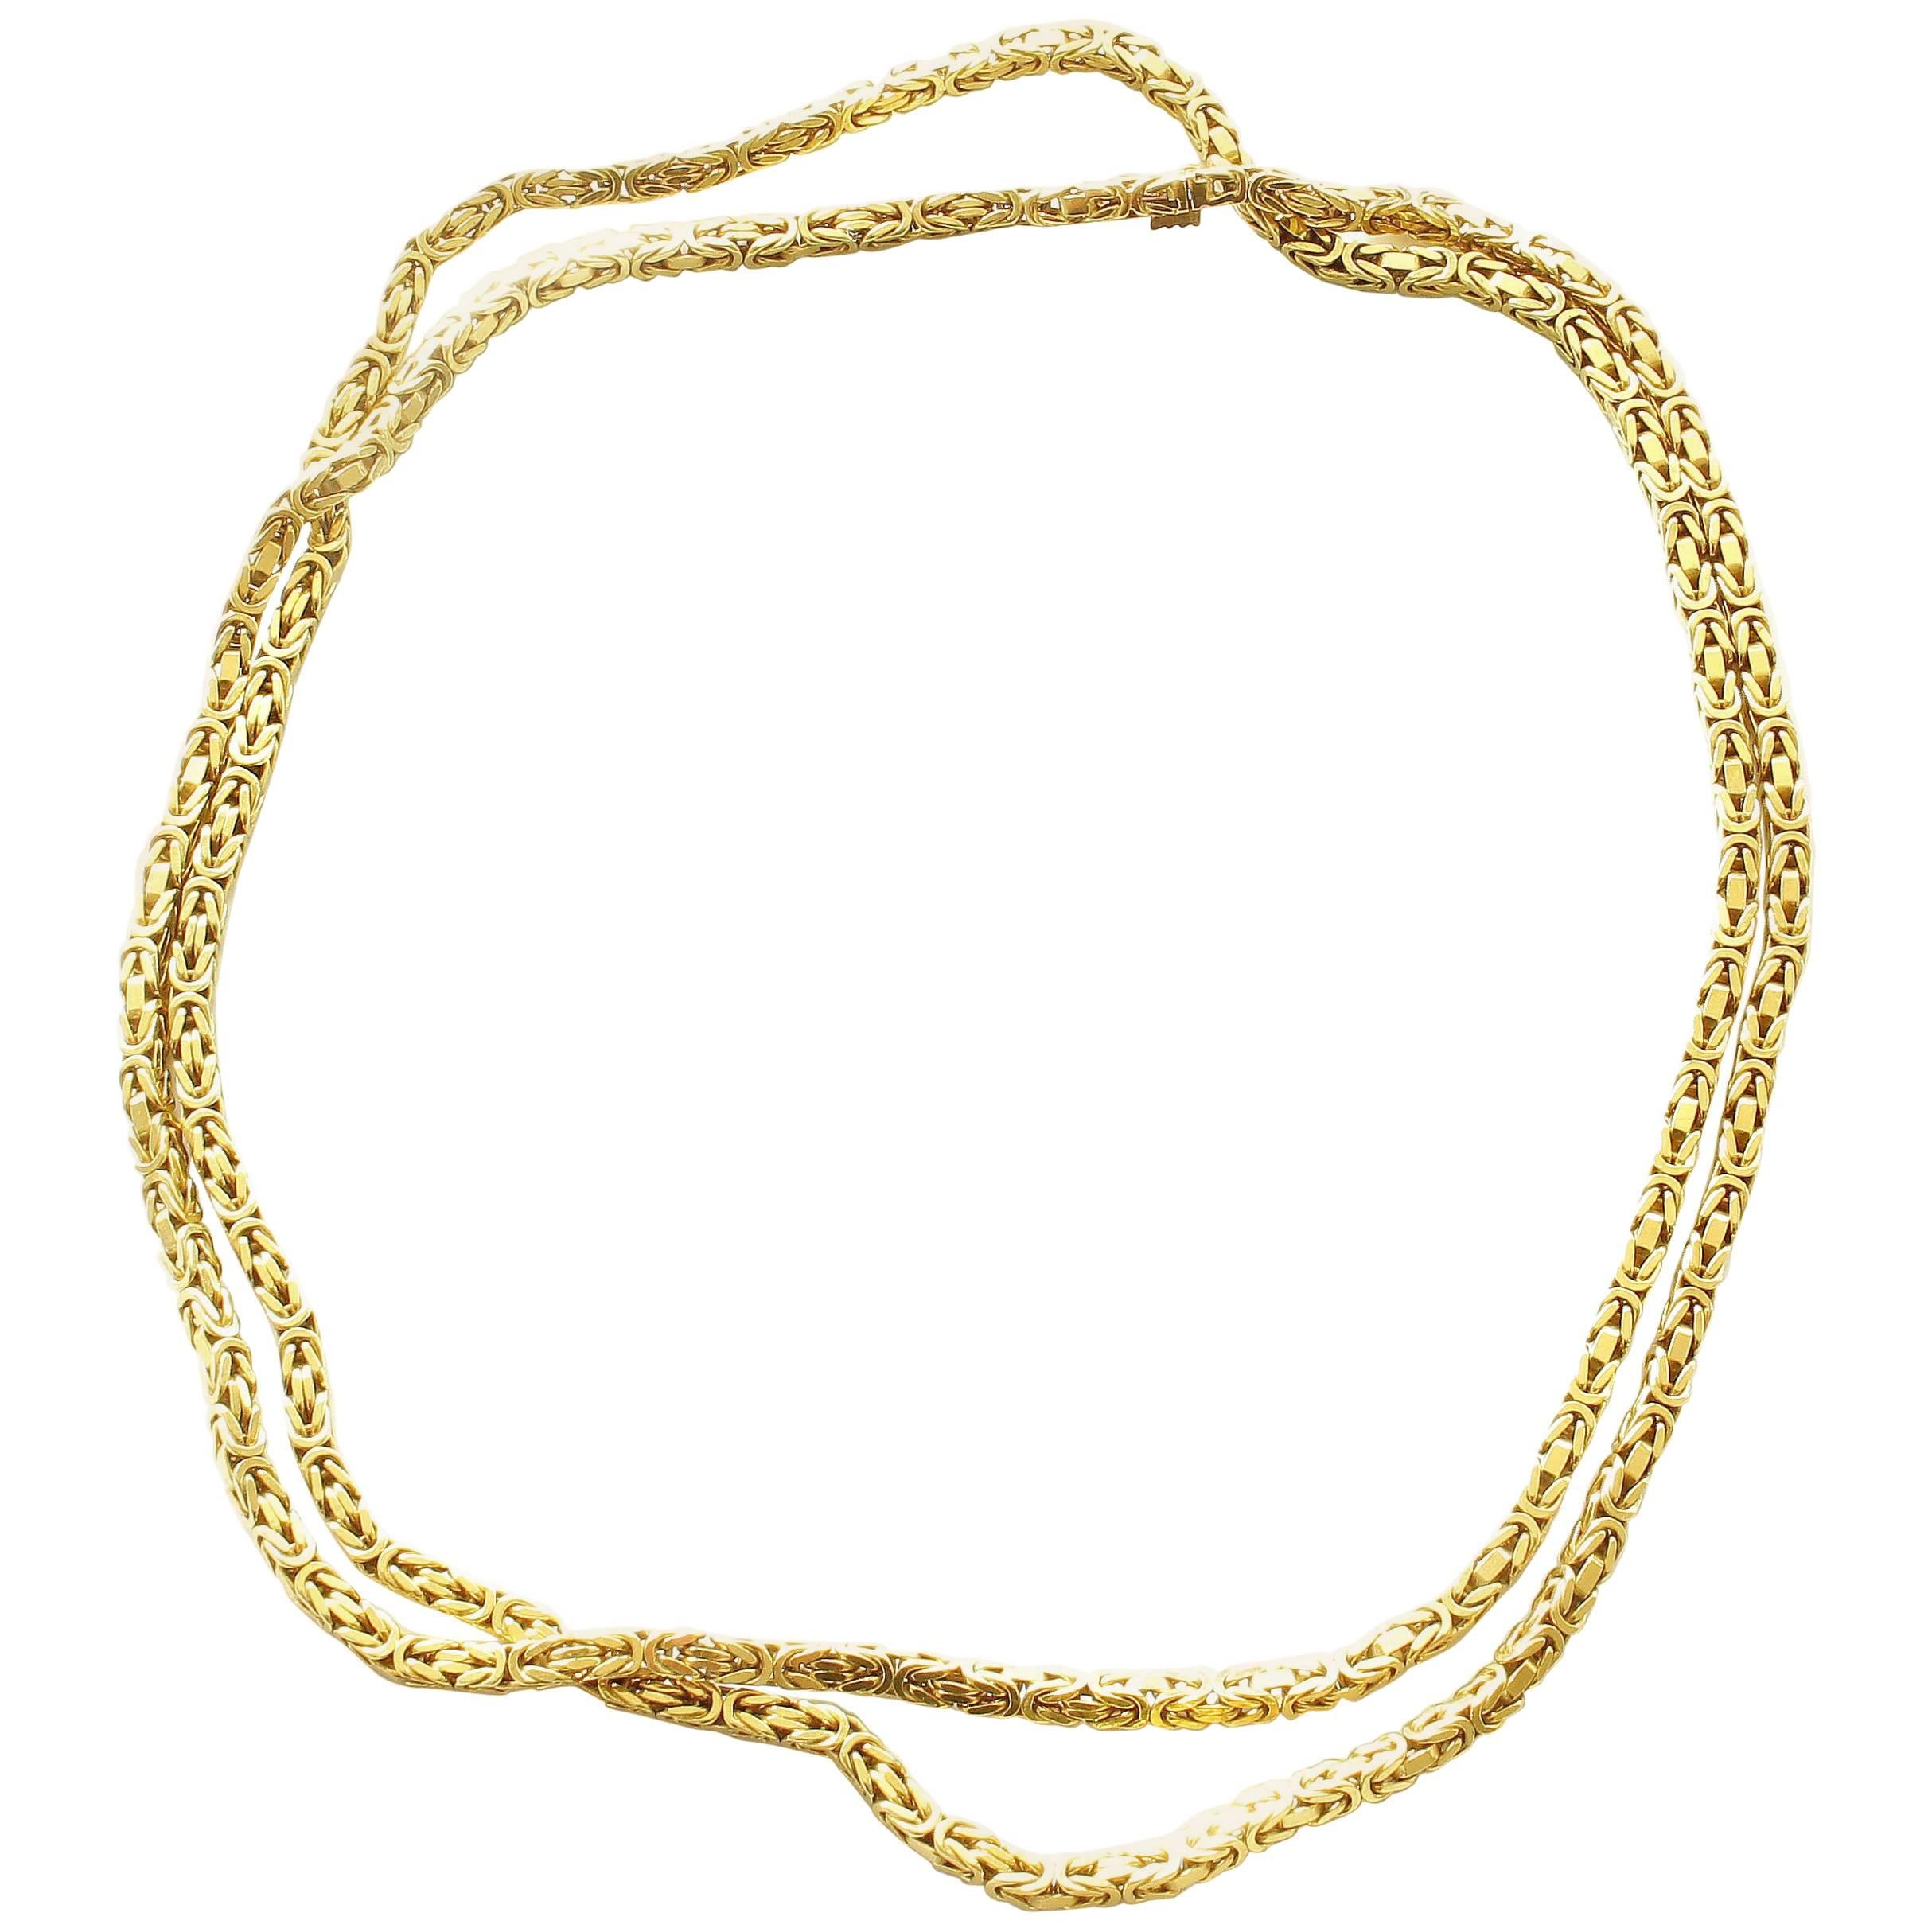 1980s French Braided 18 Karat Gold Chain